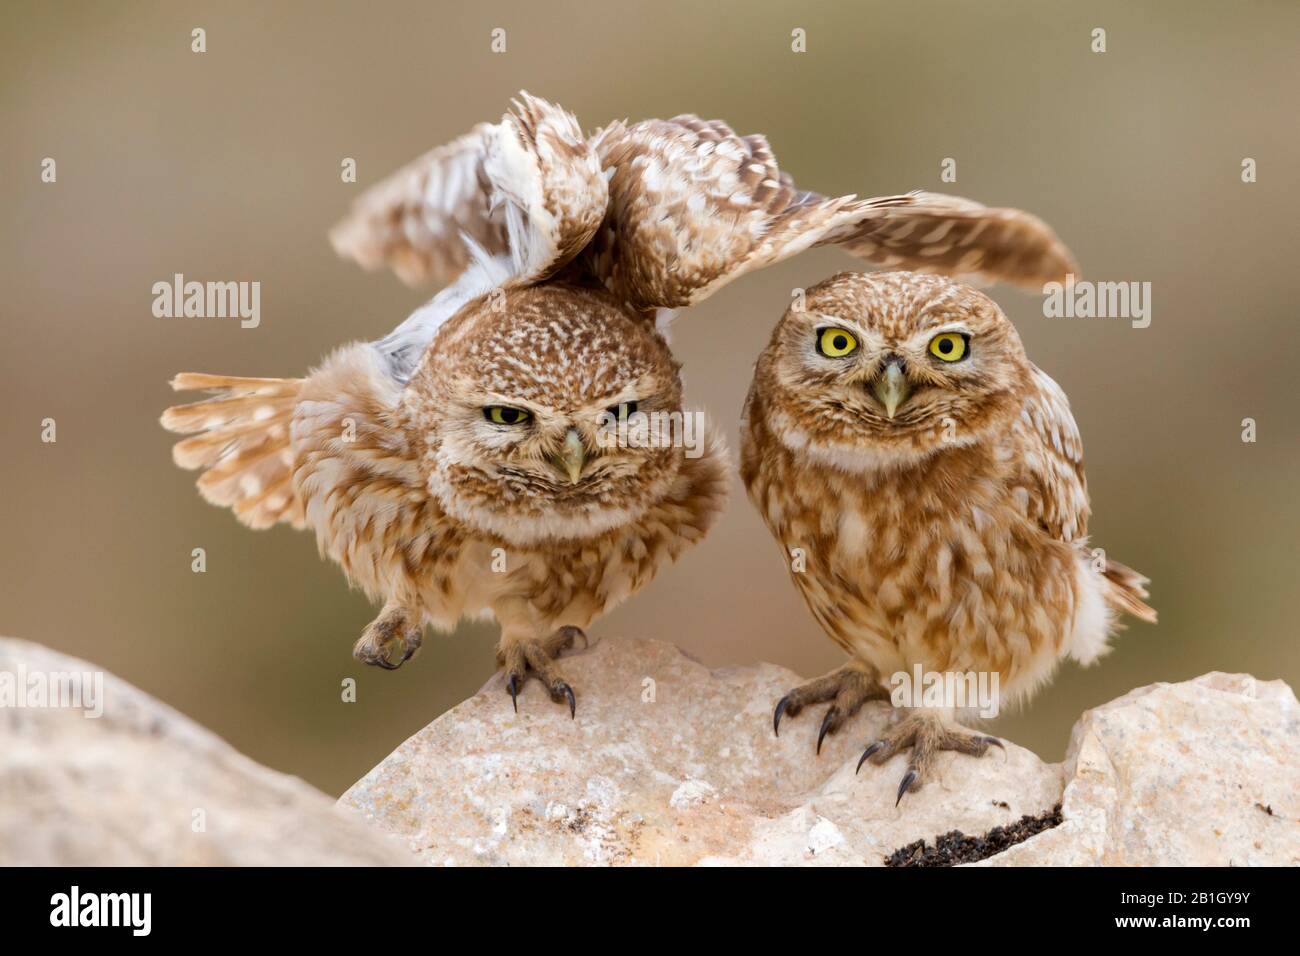 Saharian little owl (Athene noctua saharae, Athene saharae), pair on a rock, Morocco Stock Photo